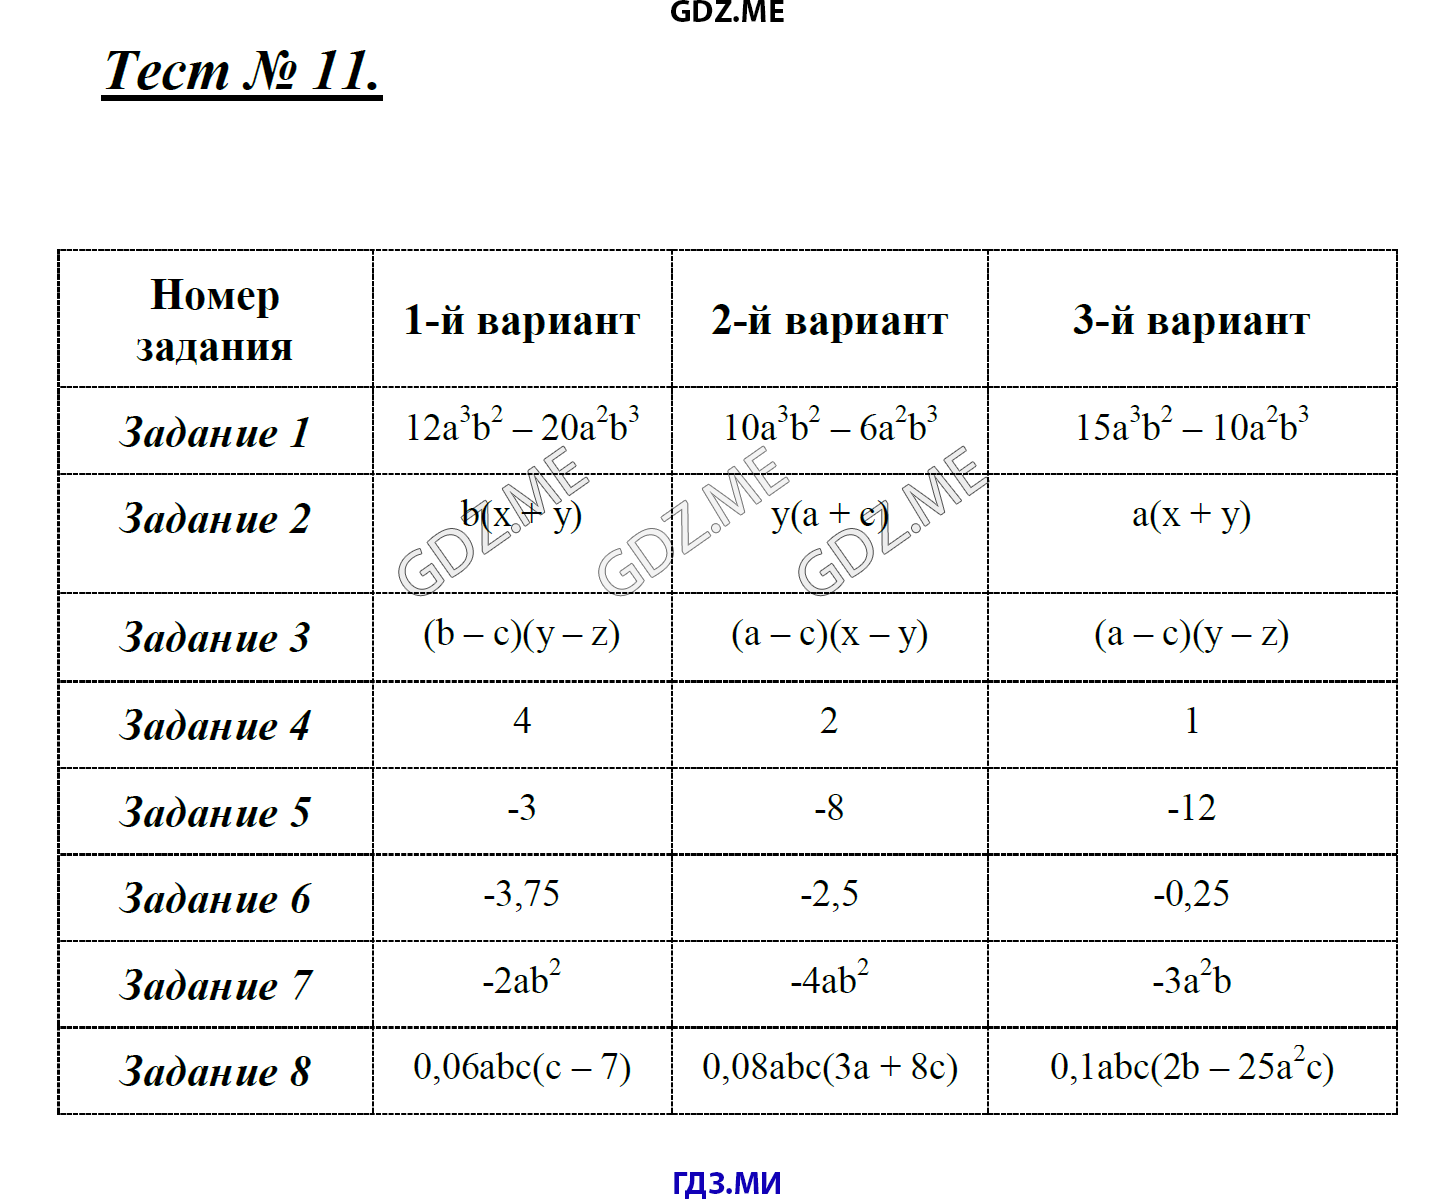 Алгебра 7 класс глазков. Тесты по алгебре 7 класс Глазков Гаиашвили. Гаиашвили гдз. Самостоятельные и контрольные работы по алгебре 7 класс Глазков. Тесты по алгебре 7 класс Глазков Гаиашвили ответы.